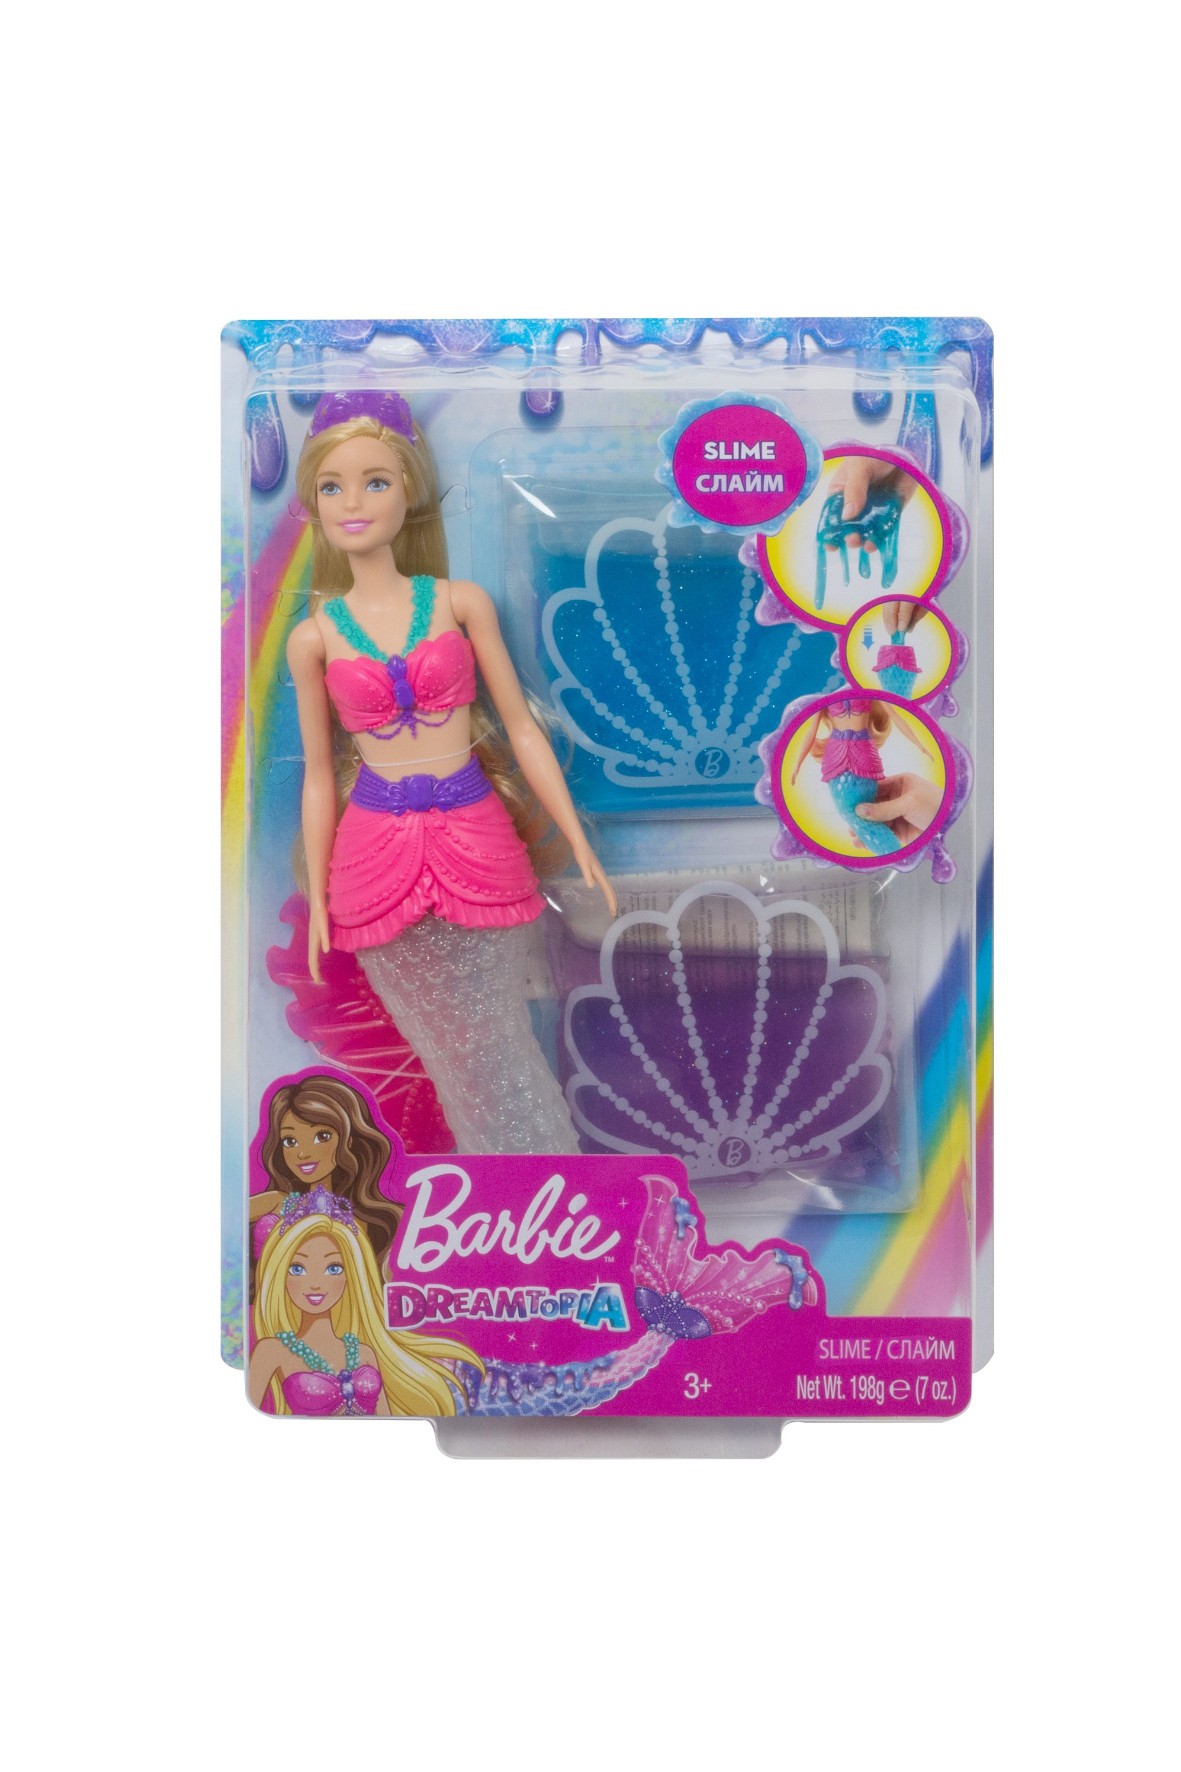 Barbie Syrena Brokatowy slime Lalka wiek 3+